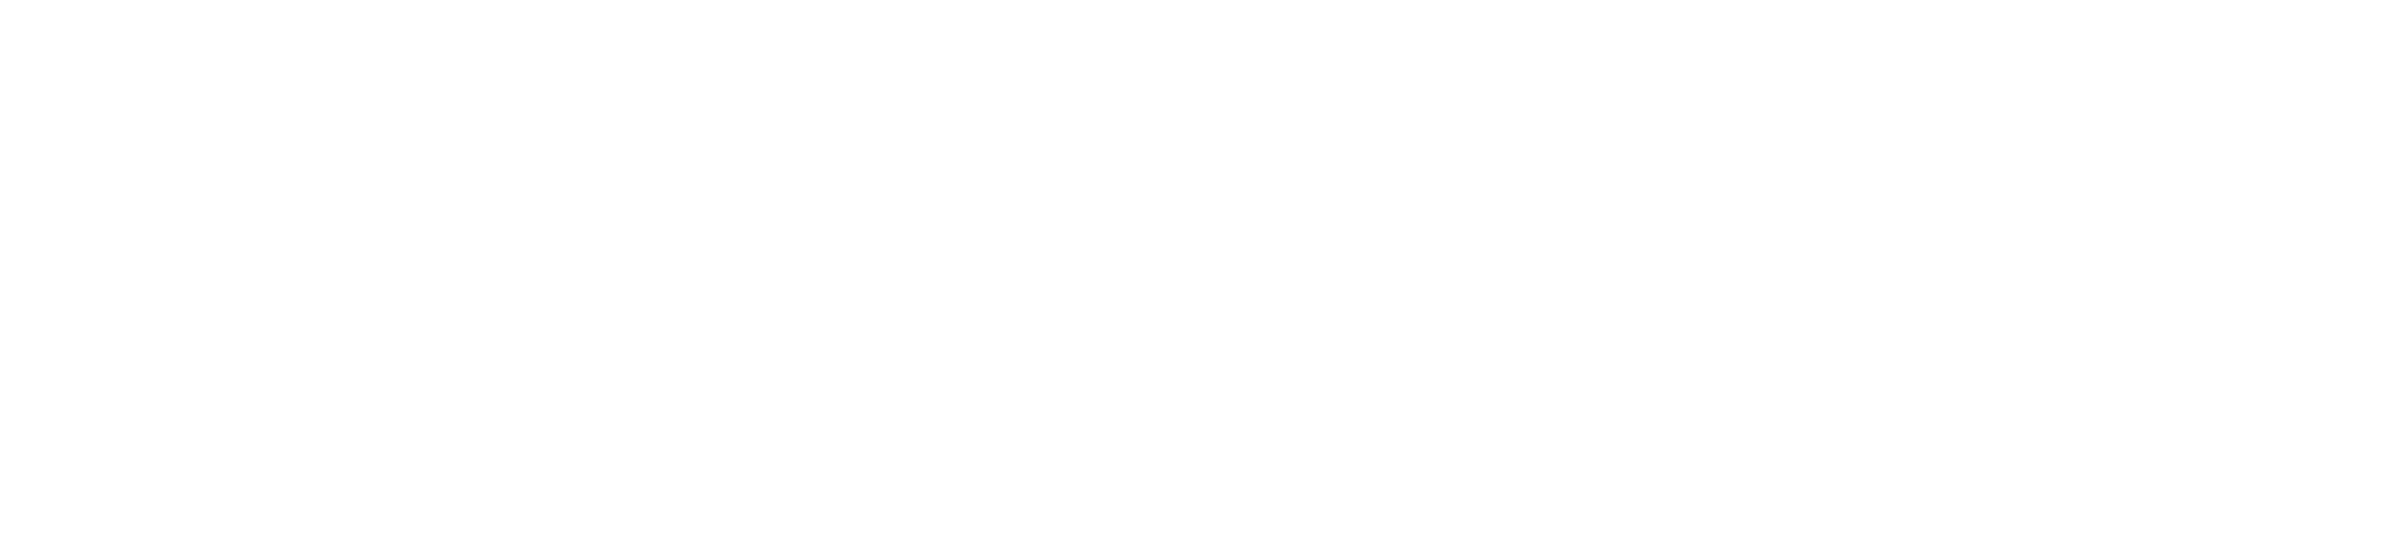 DRILER logo2